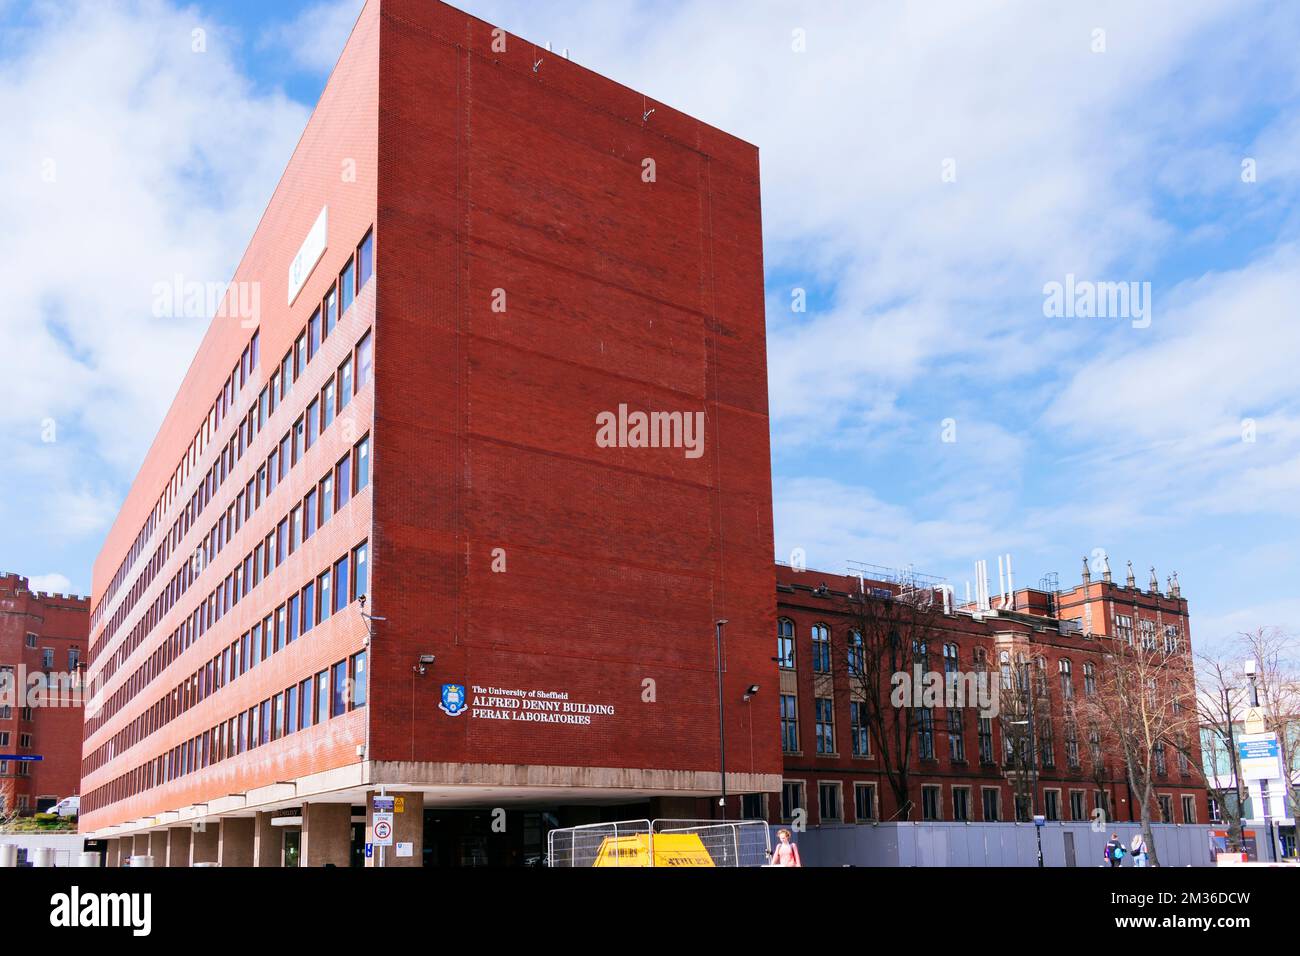 Das Alfred Denny Building ist ein 7-stöckiges rotes Backsteingebäude in Sheffield, England, benannt nach dem ersten Zoologieprofessor der Abteilung. Es ist p Stockfoto